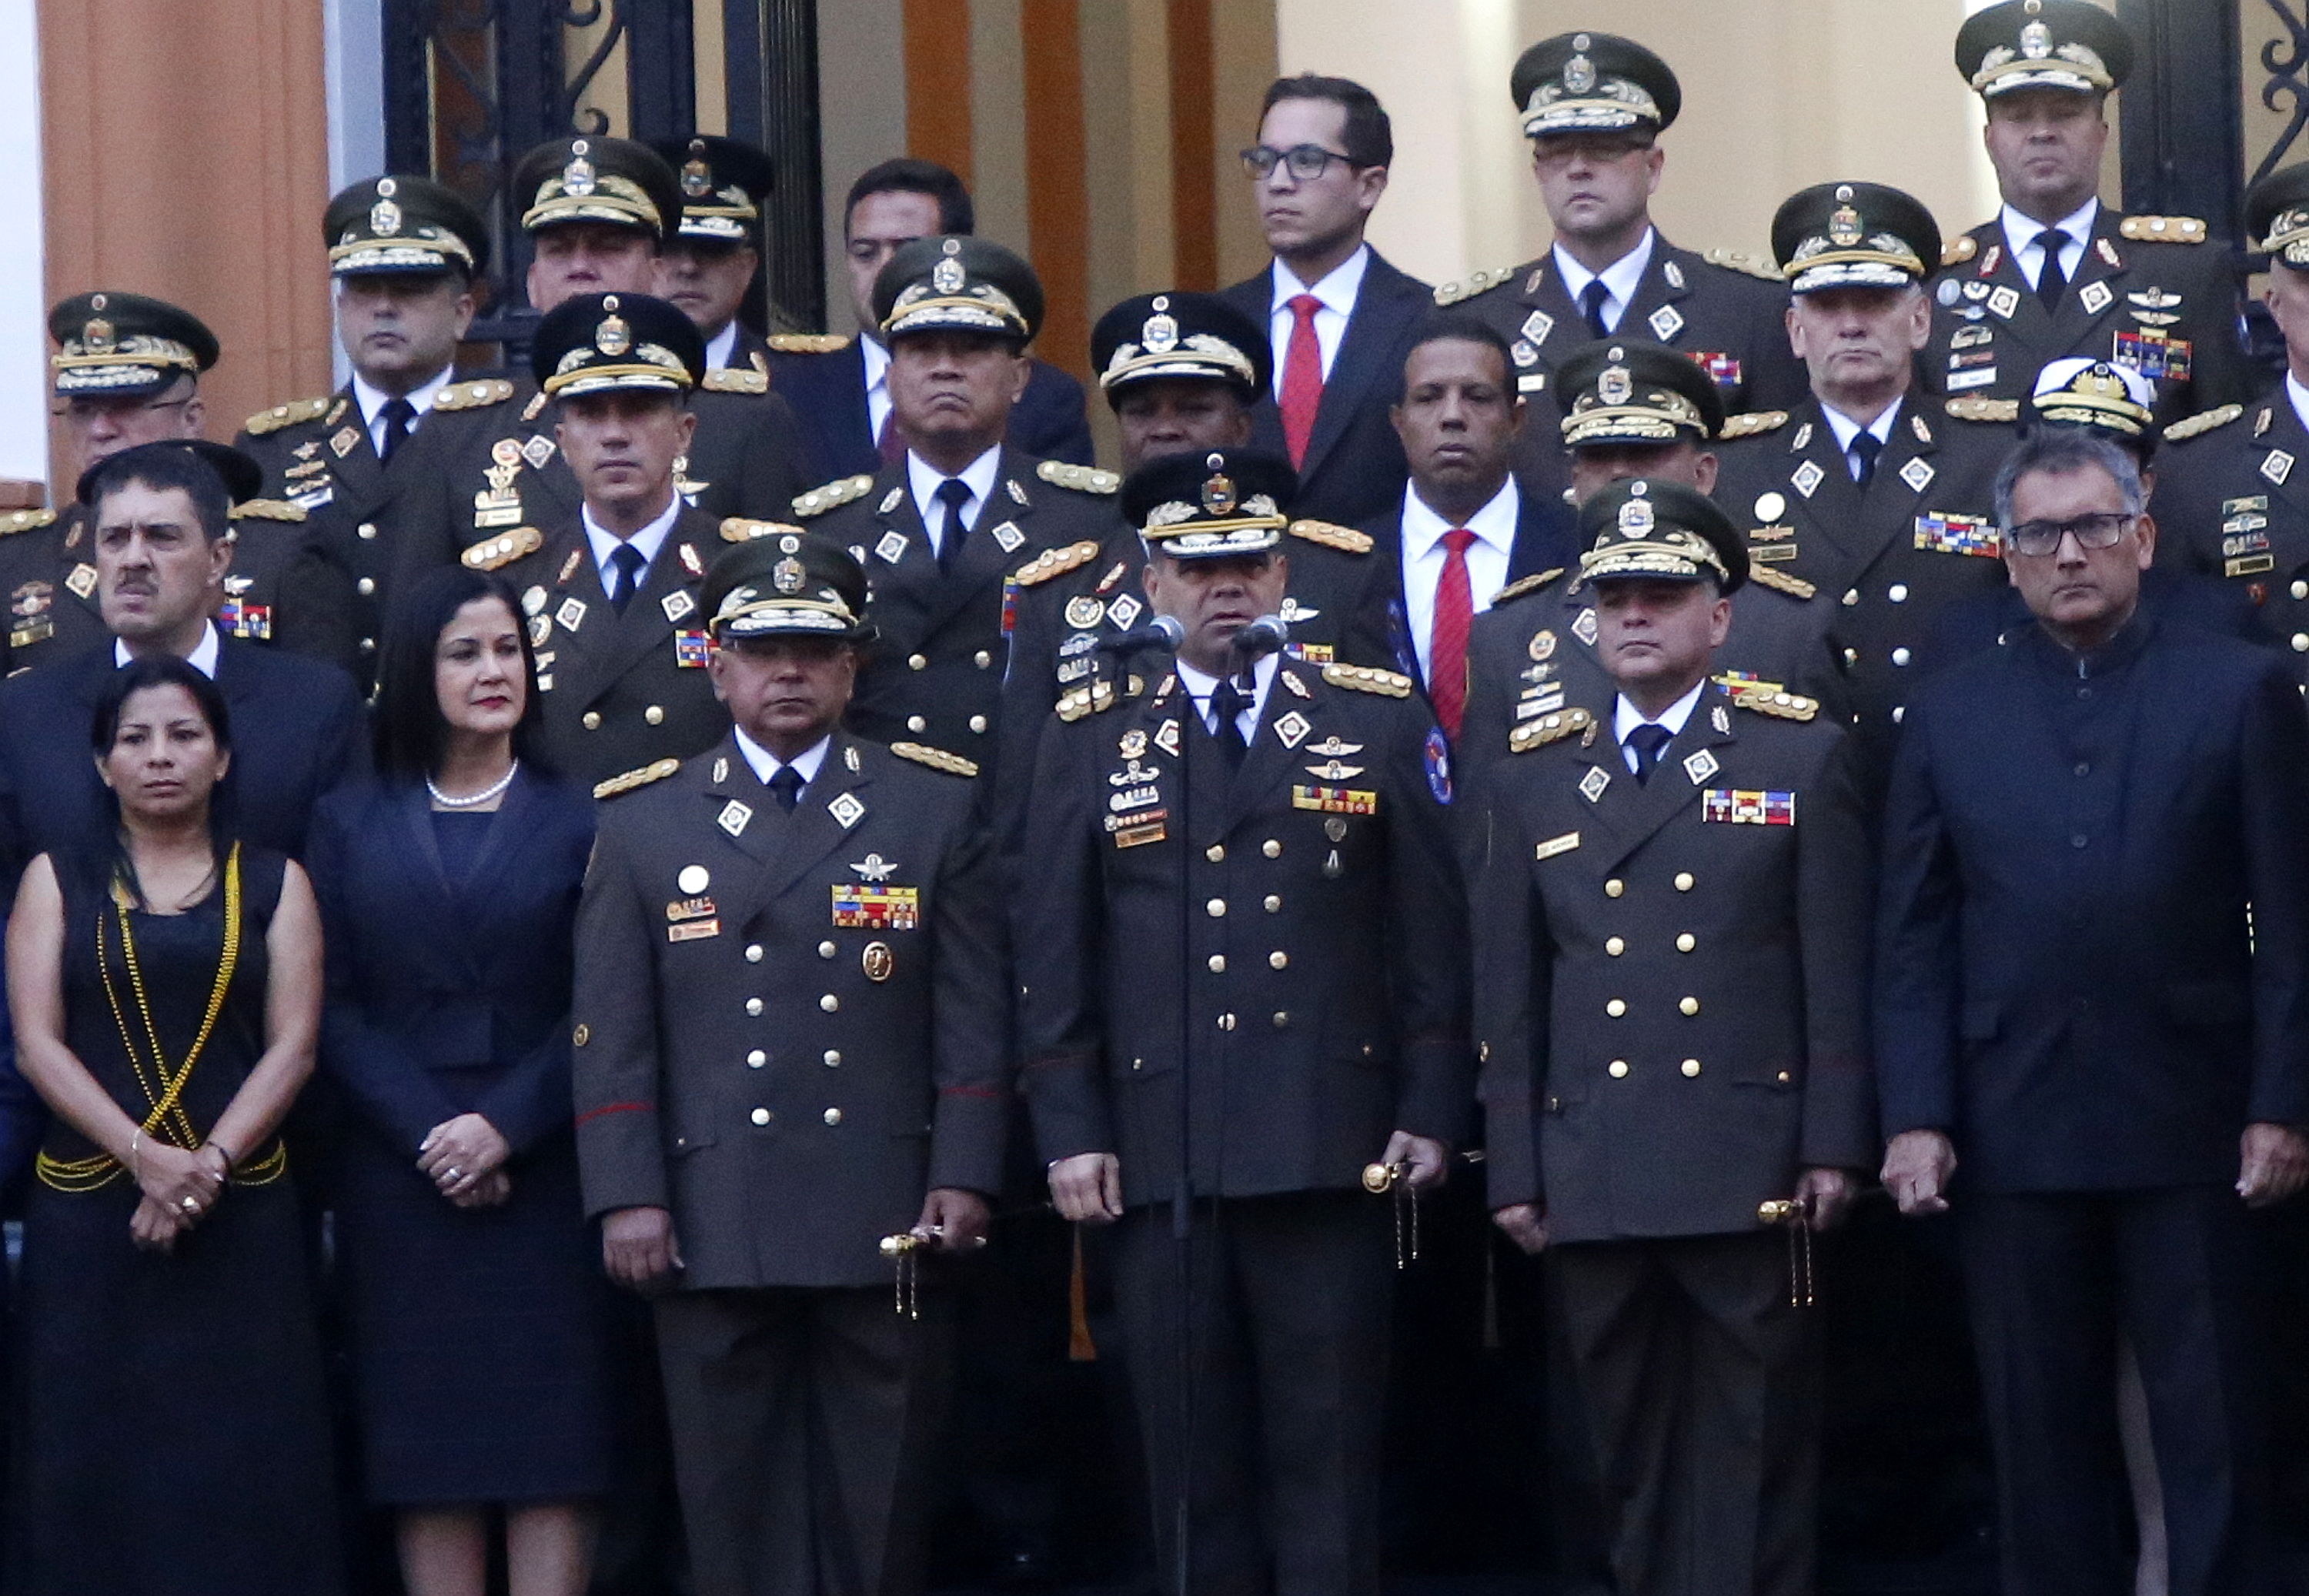 Este miércoles se conmemora en Venezuela 206 años de la firma del acta de la Independencia y el día de la Fuerza Armada Nacional Bolivariana de Venezuela.